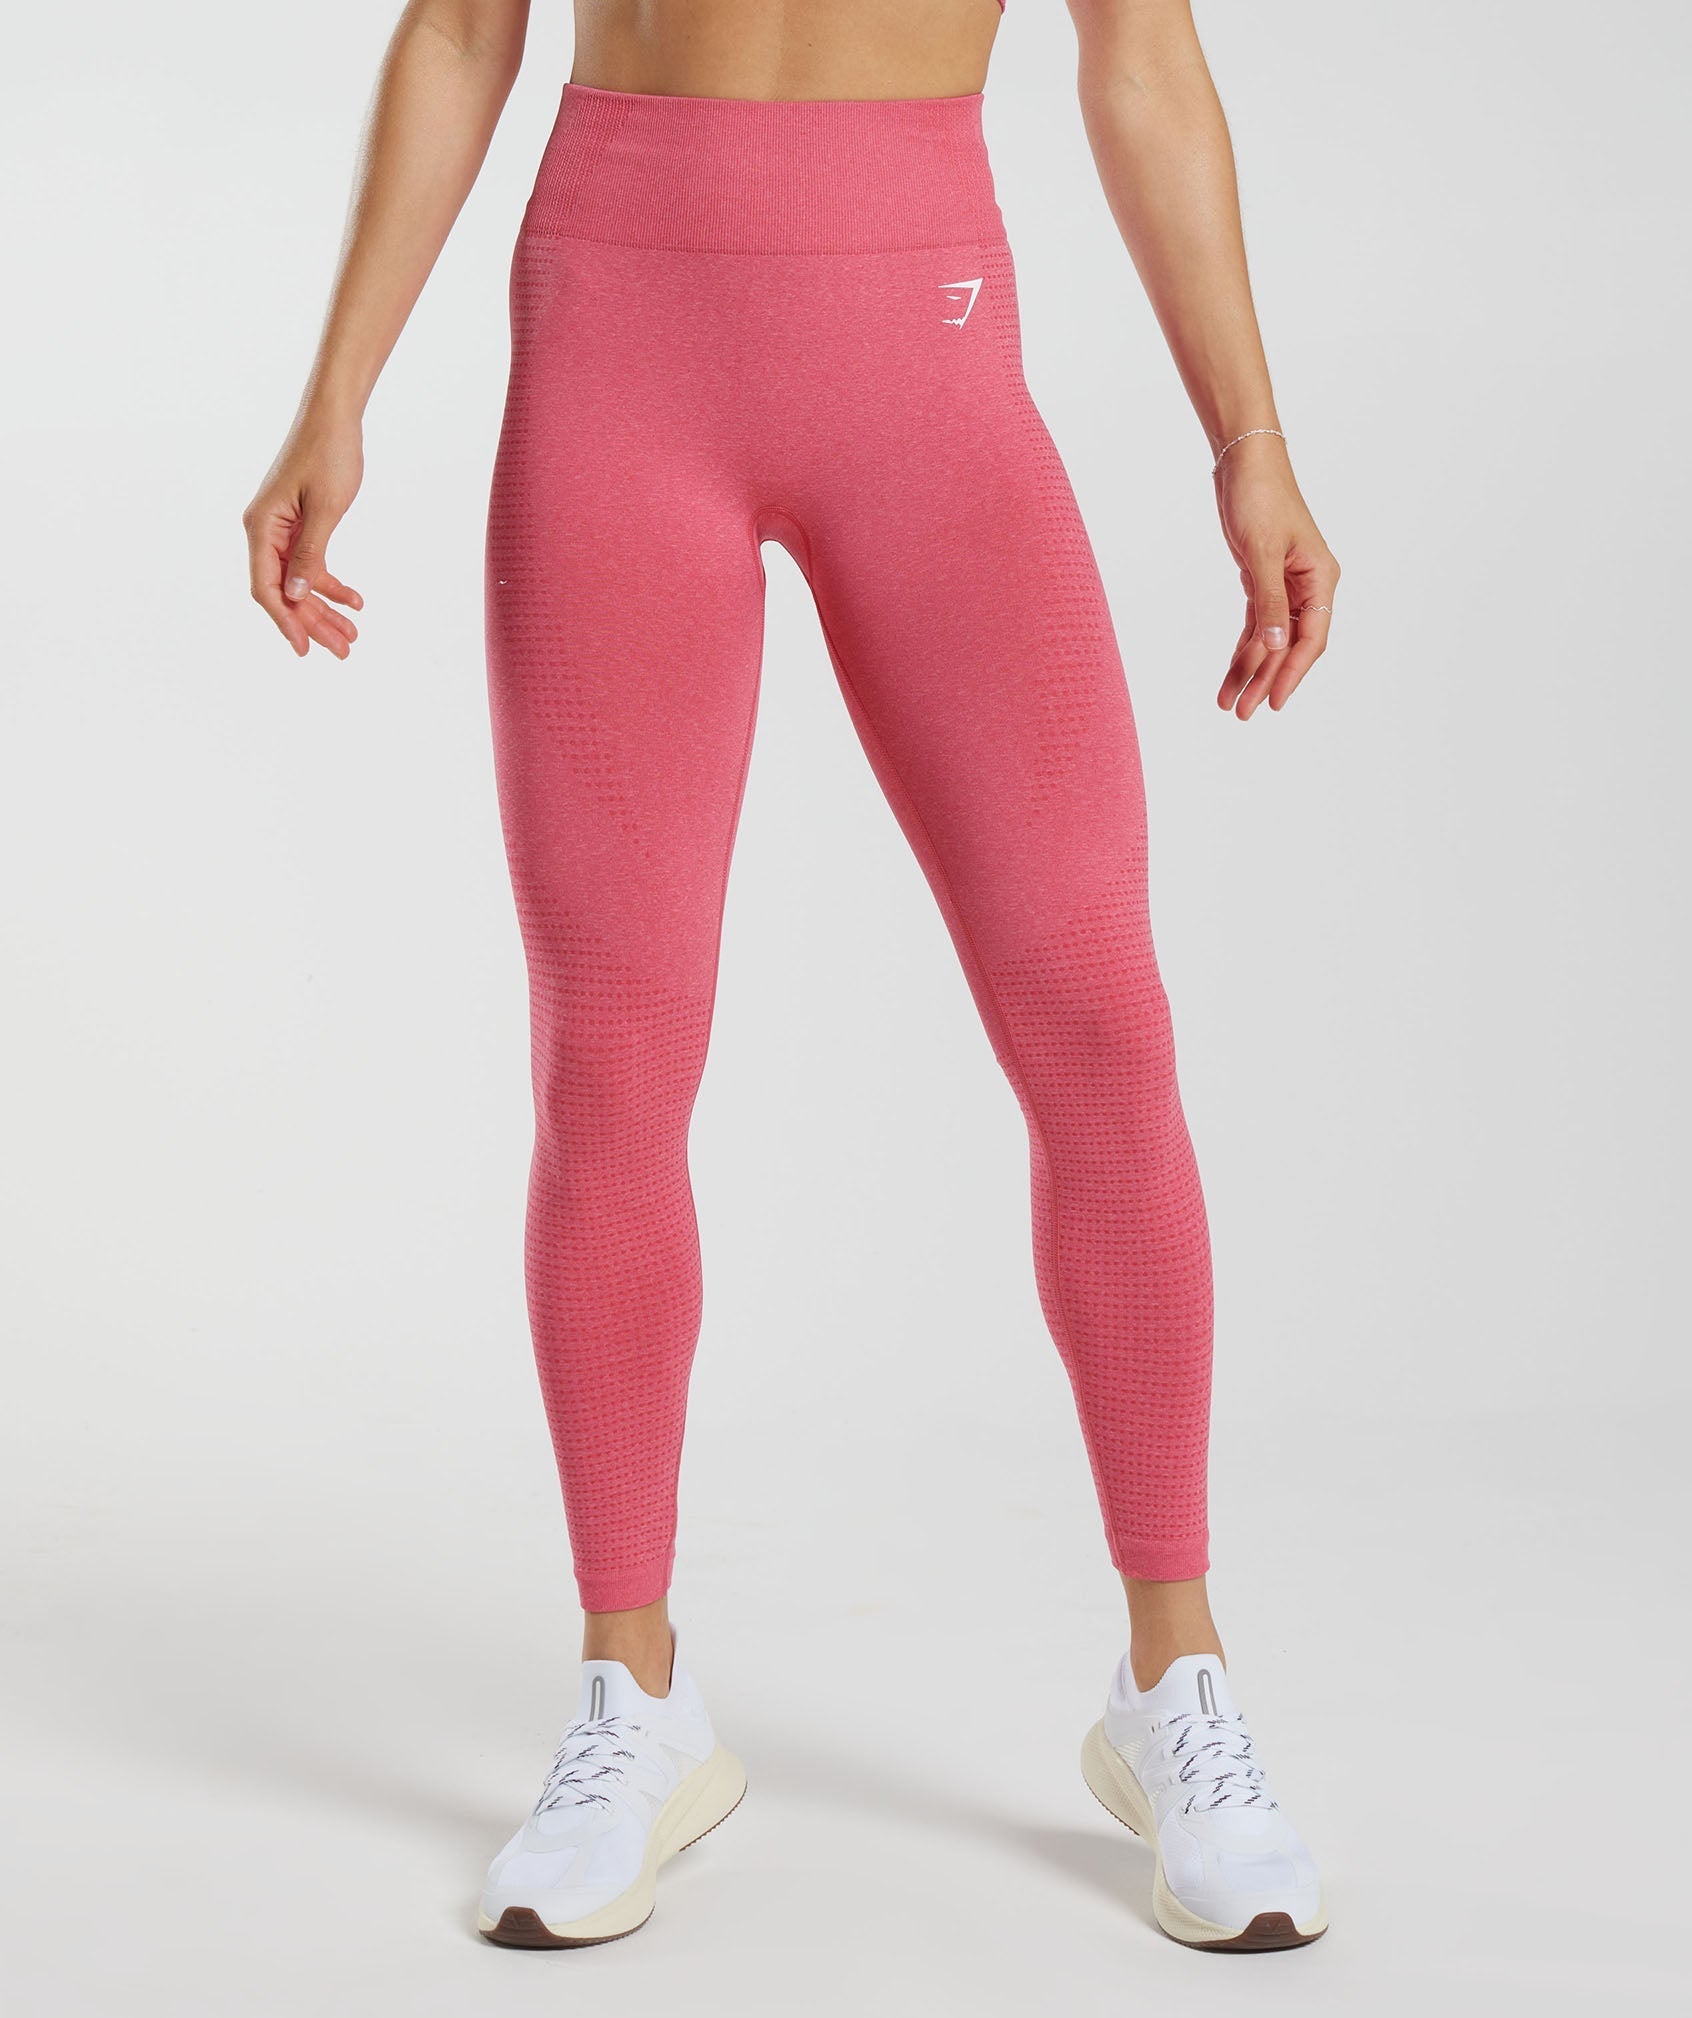 gymshark Energy + Seamless Leggings in Beet Red  Seamless leggings,  Gymshark flex leggings, Gymshark fit leggings